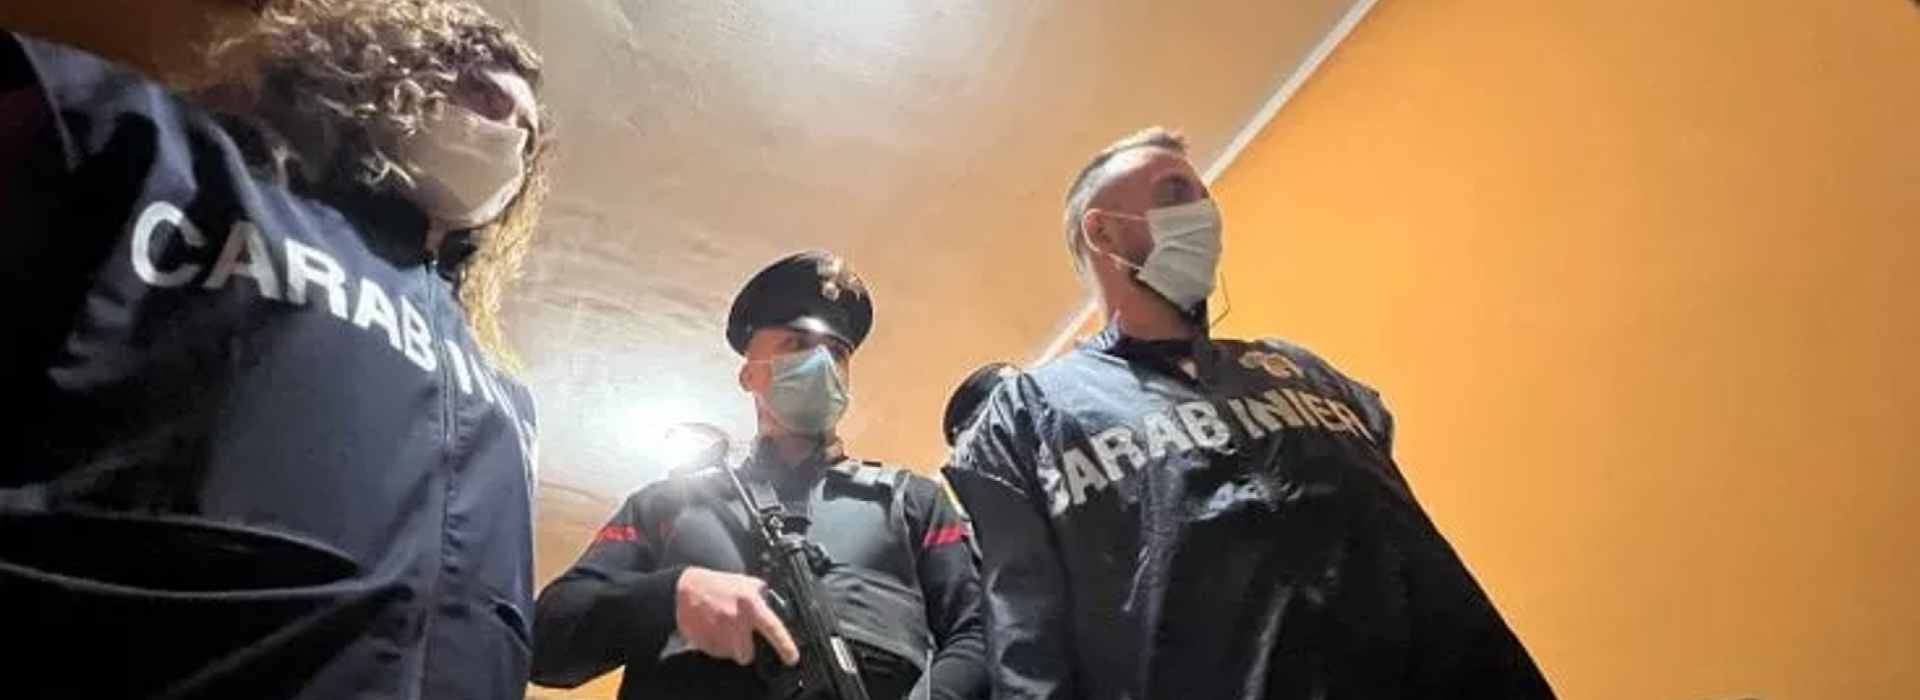 "La stanza degli orrori" usata per torturare le vittime: 14 persone arrestate